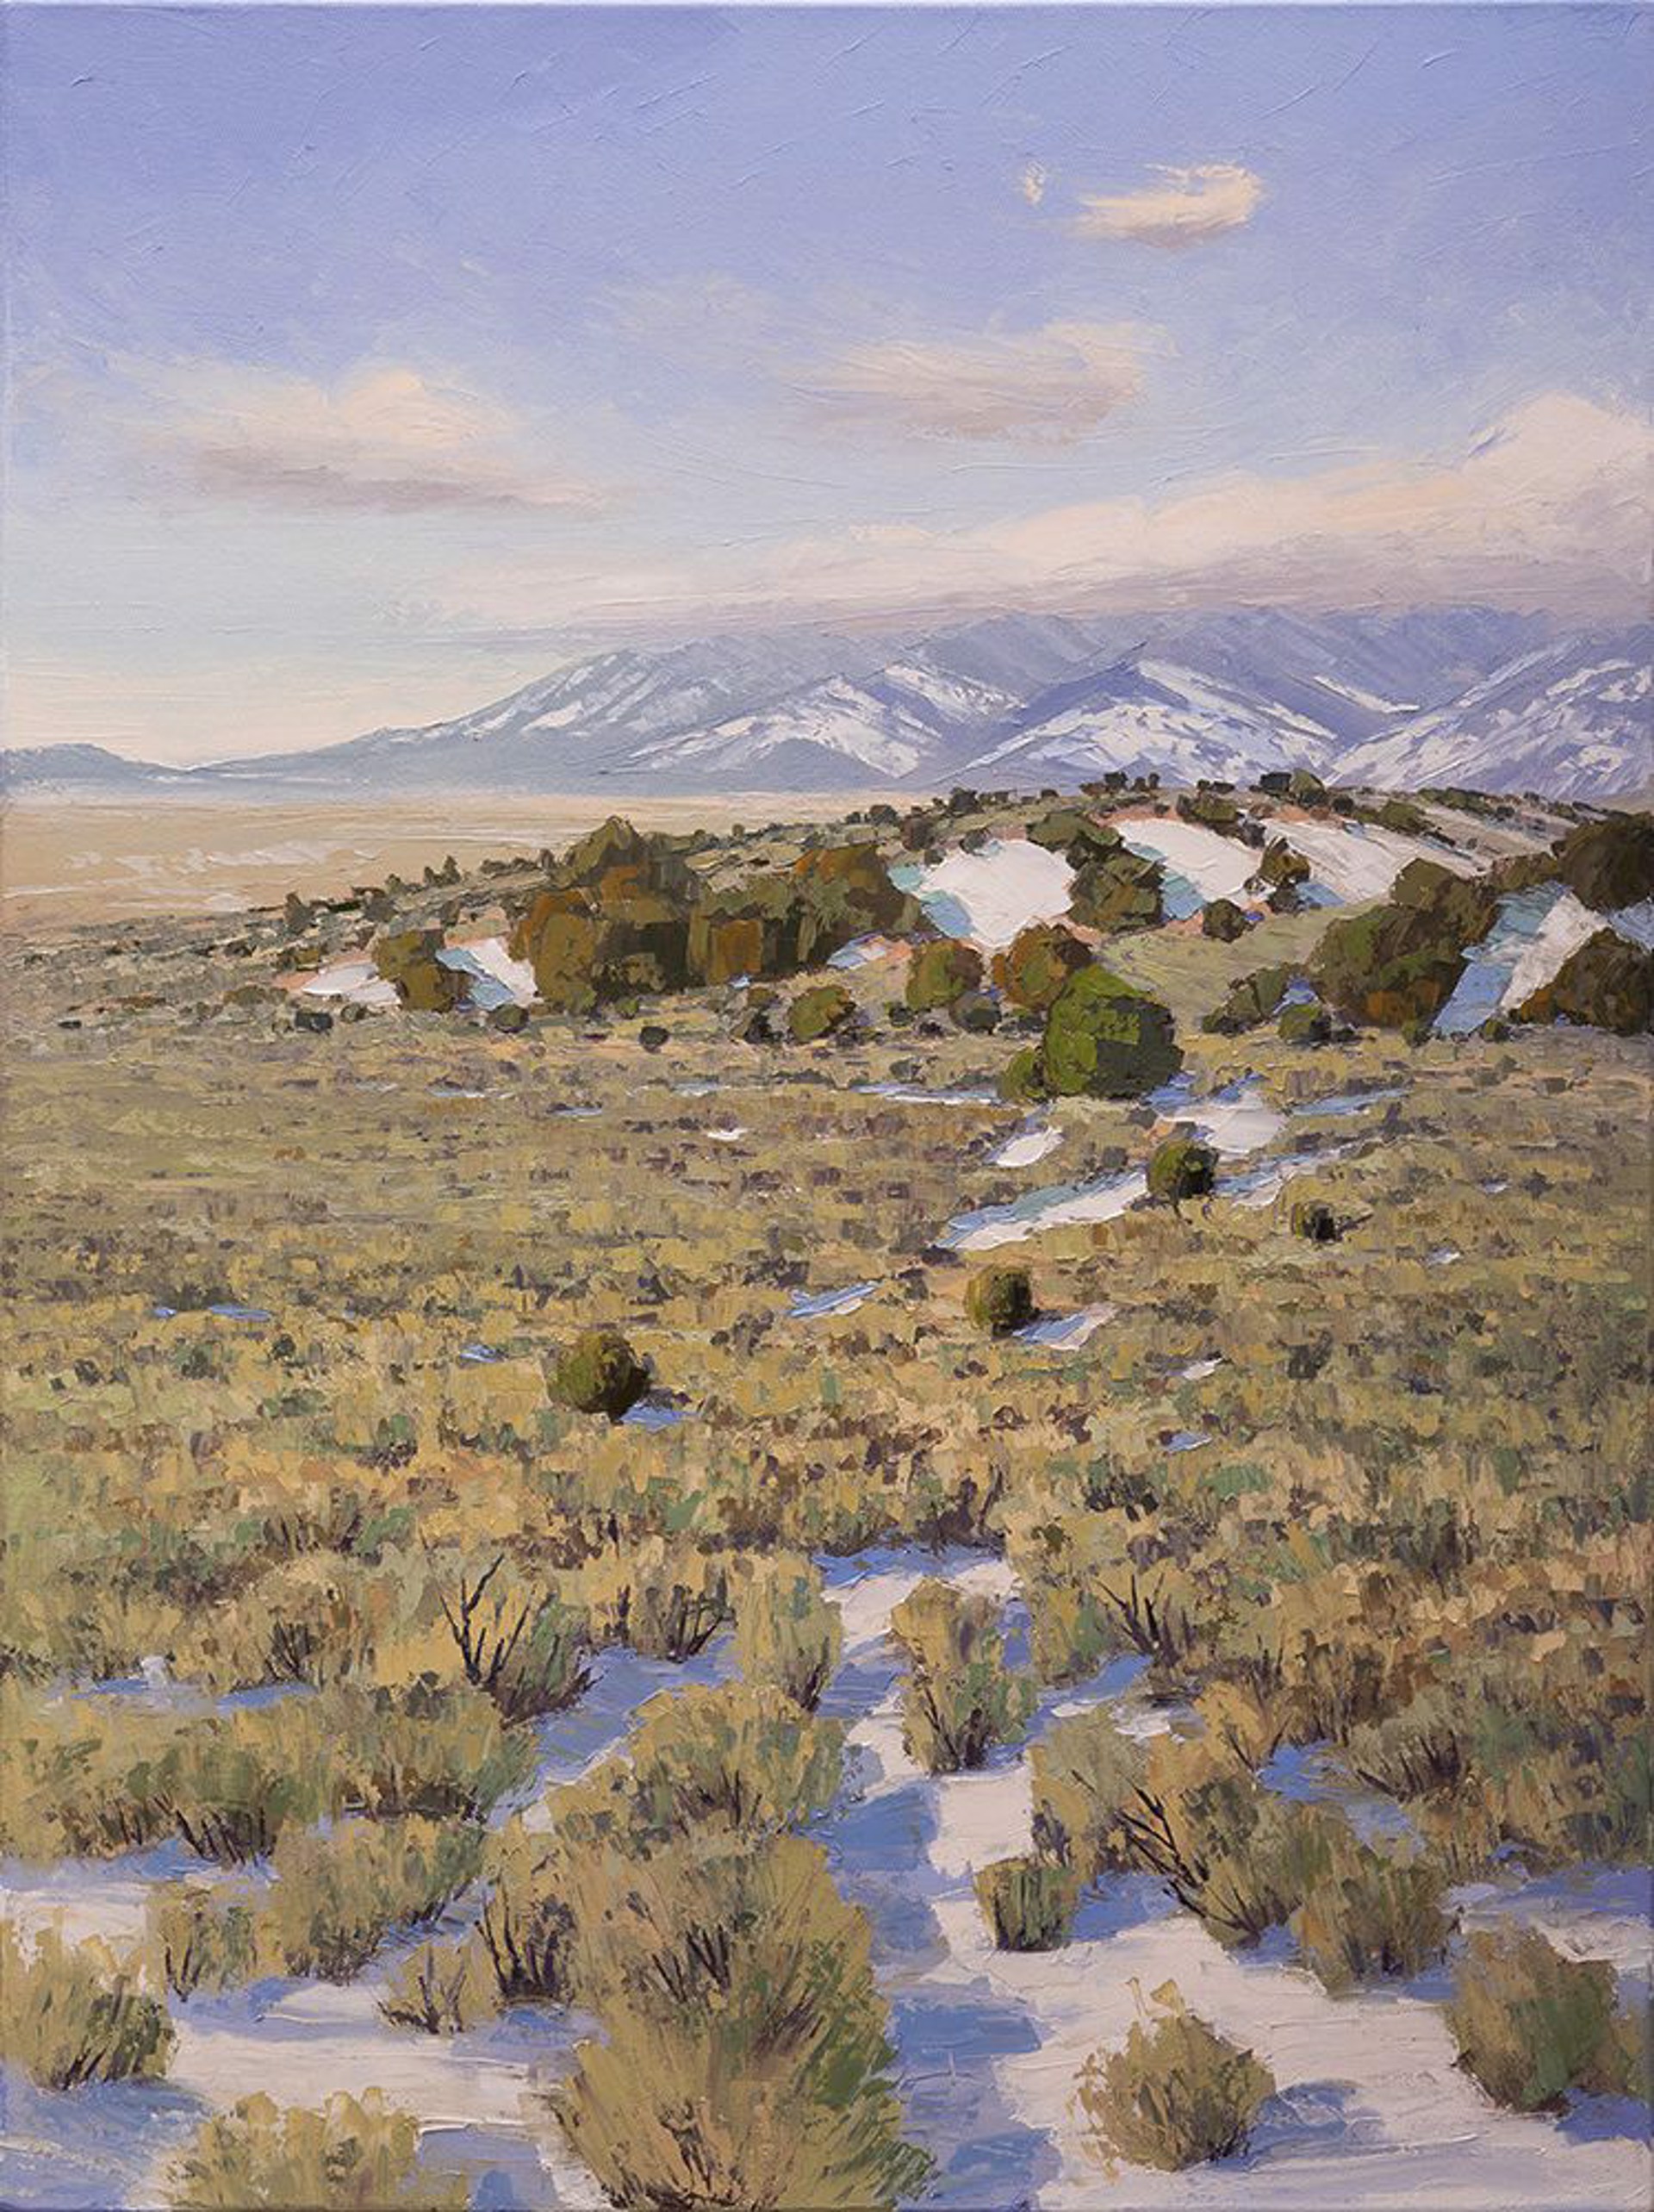 Taos Mesa Winter by Ken Daggett